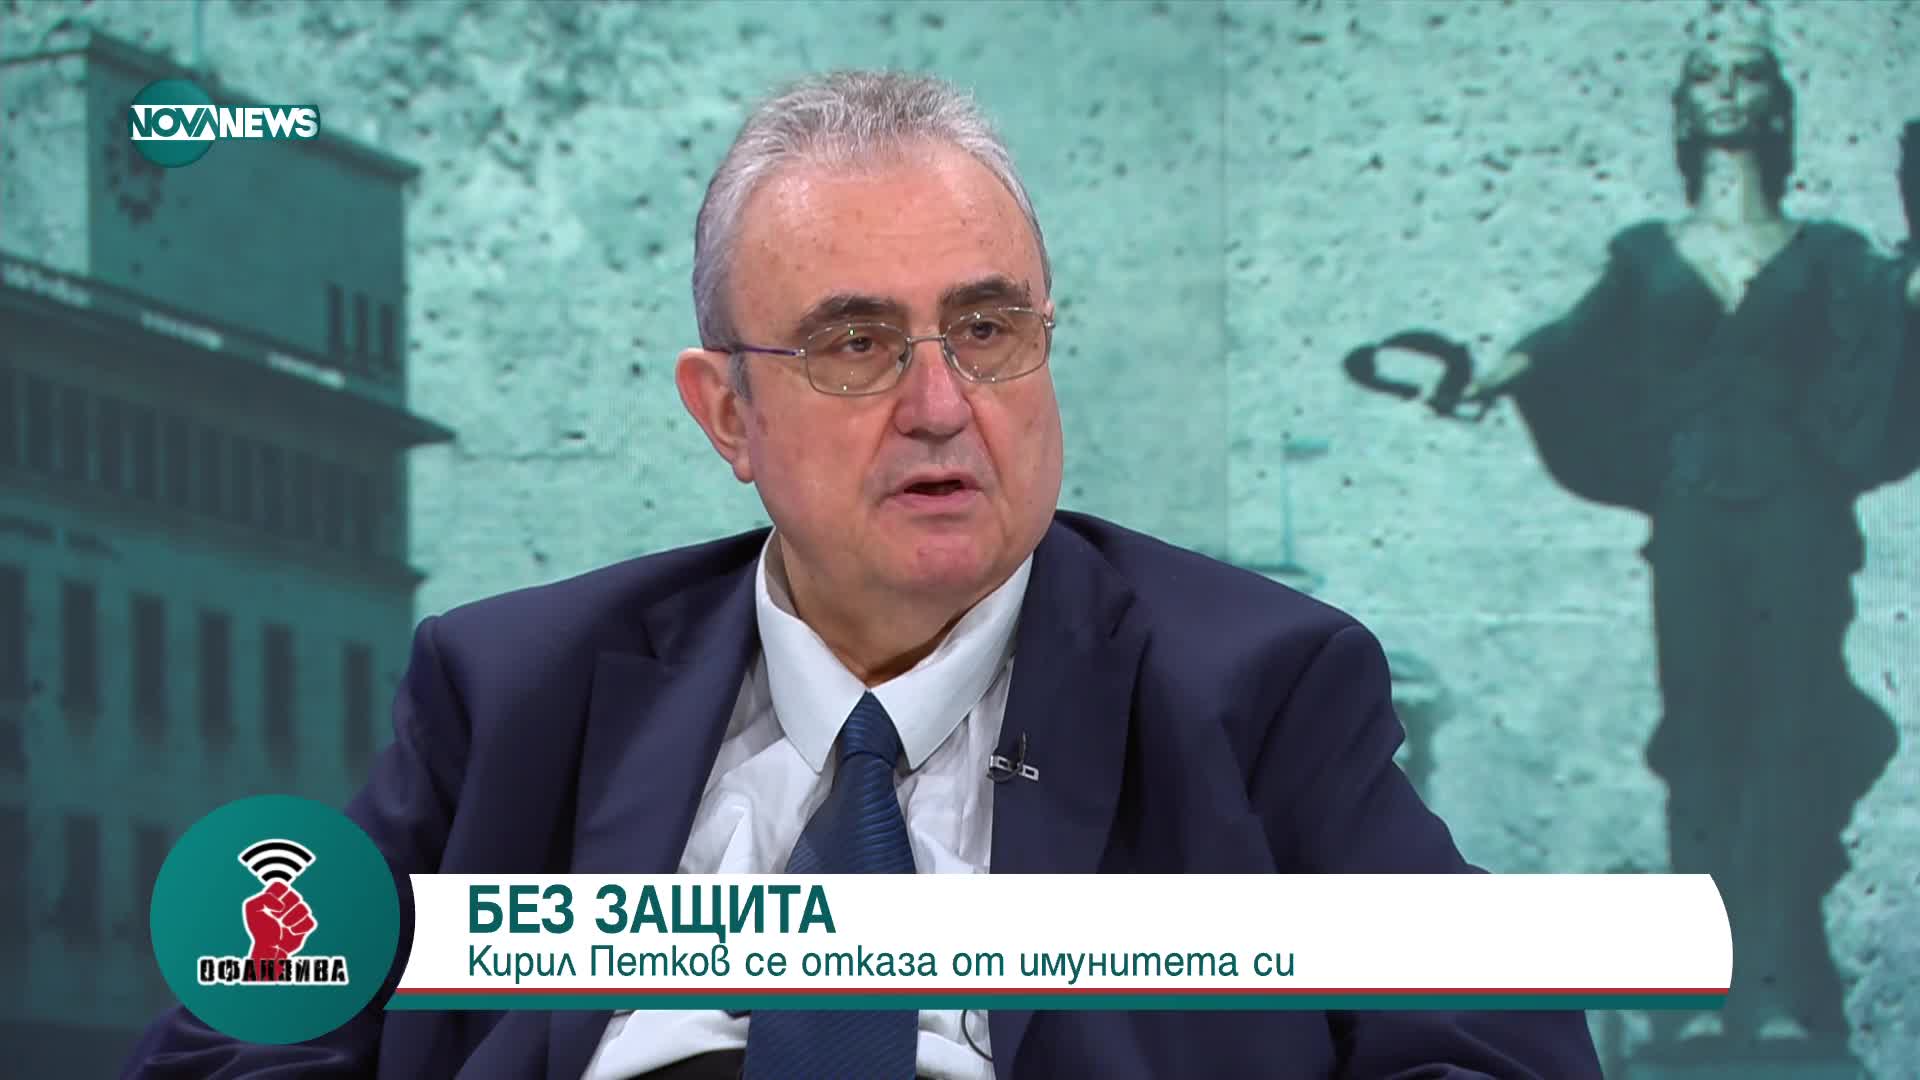 Минчев: Ако някой е смятал, че с отстраняването на Гешев прави правосъдна реформа, сега ще види исти